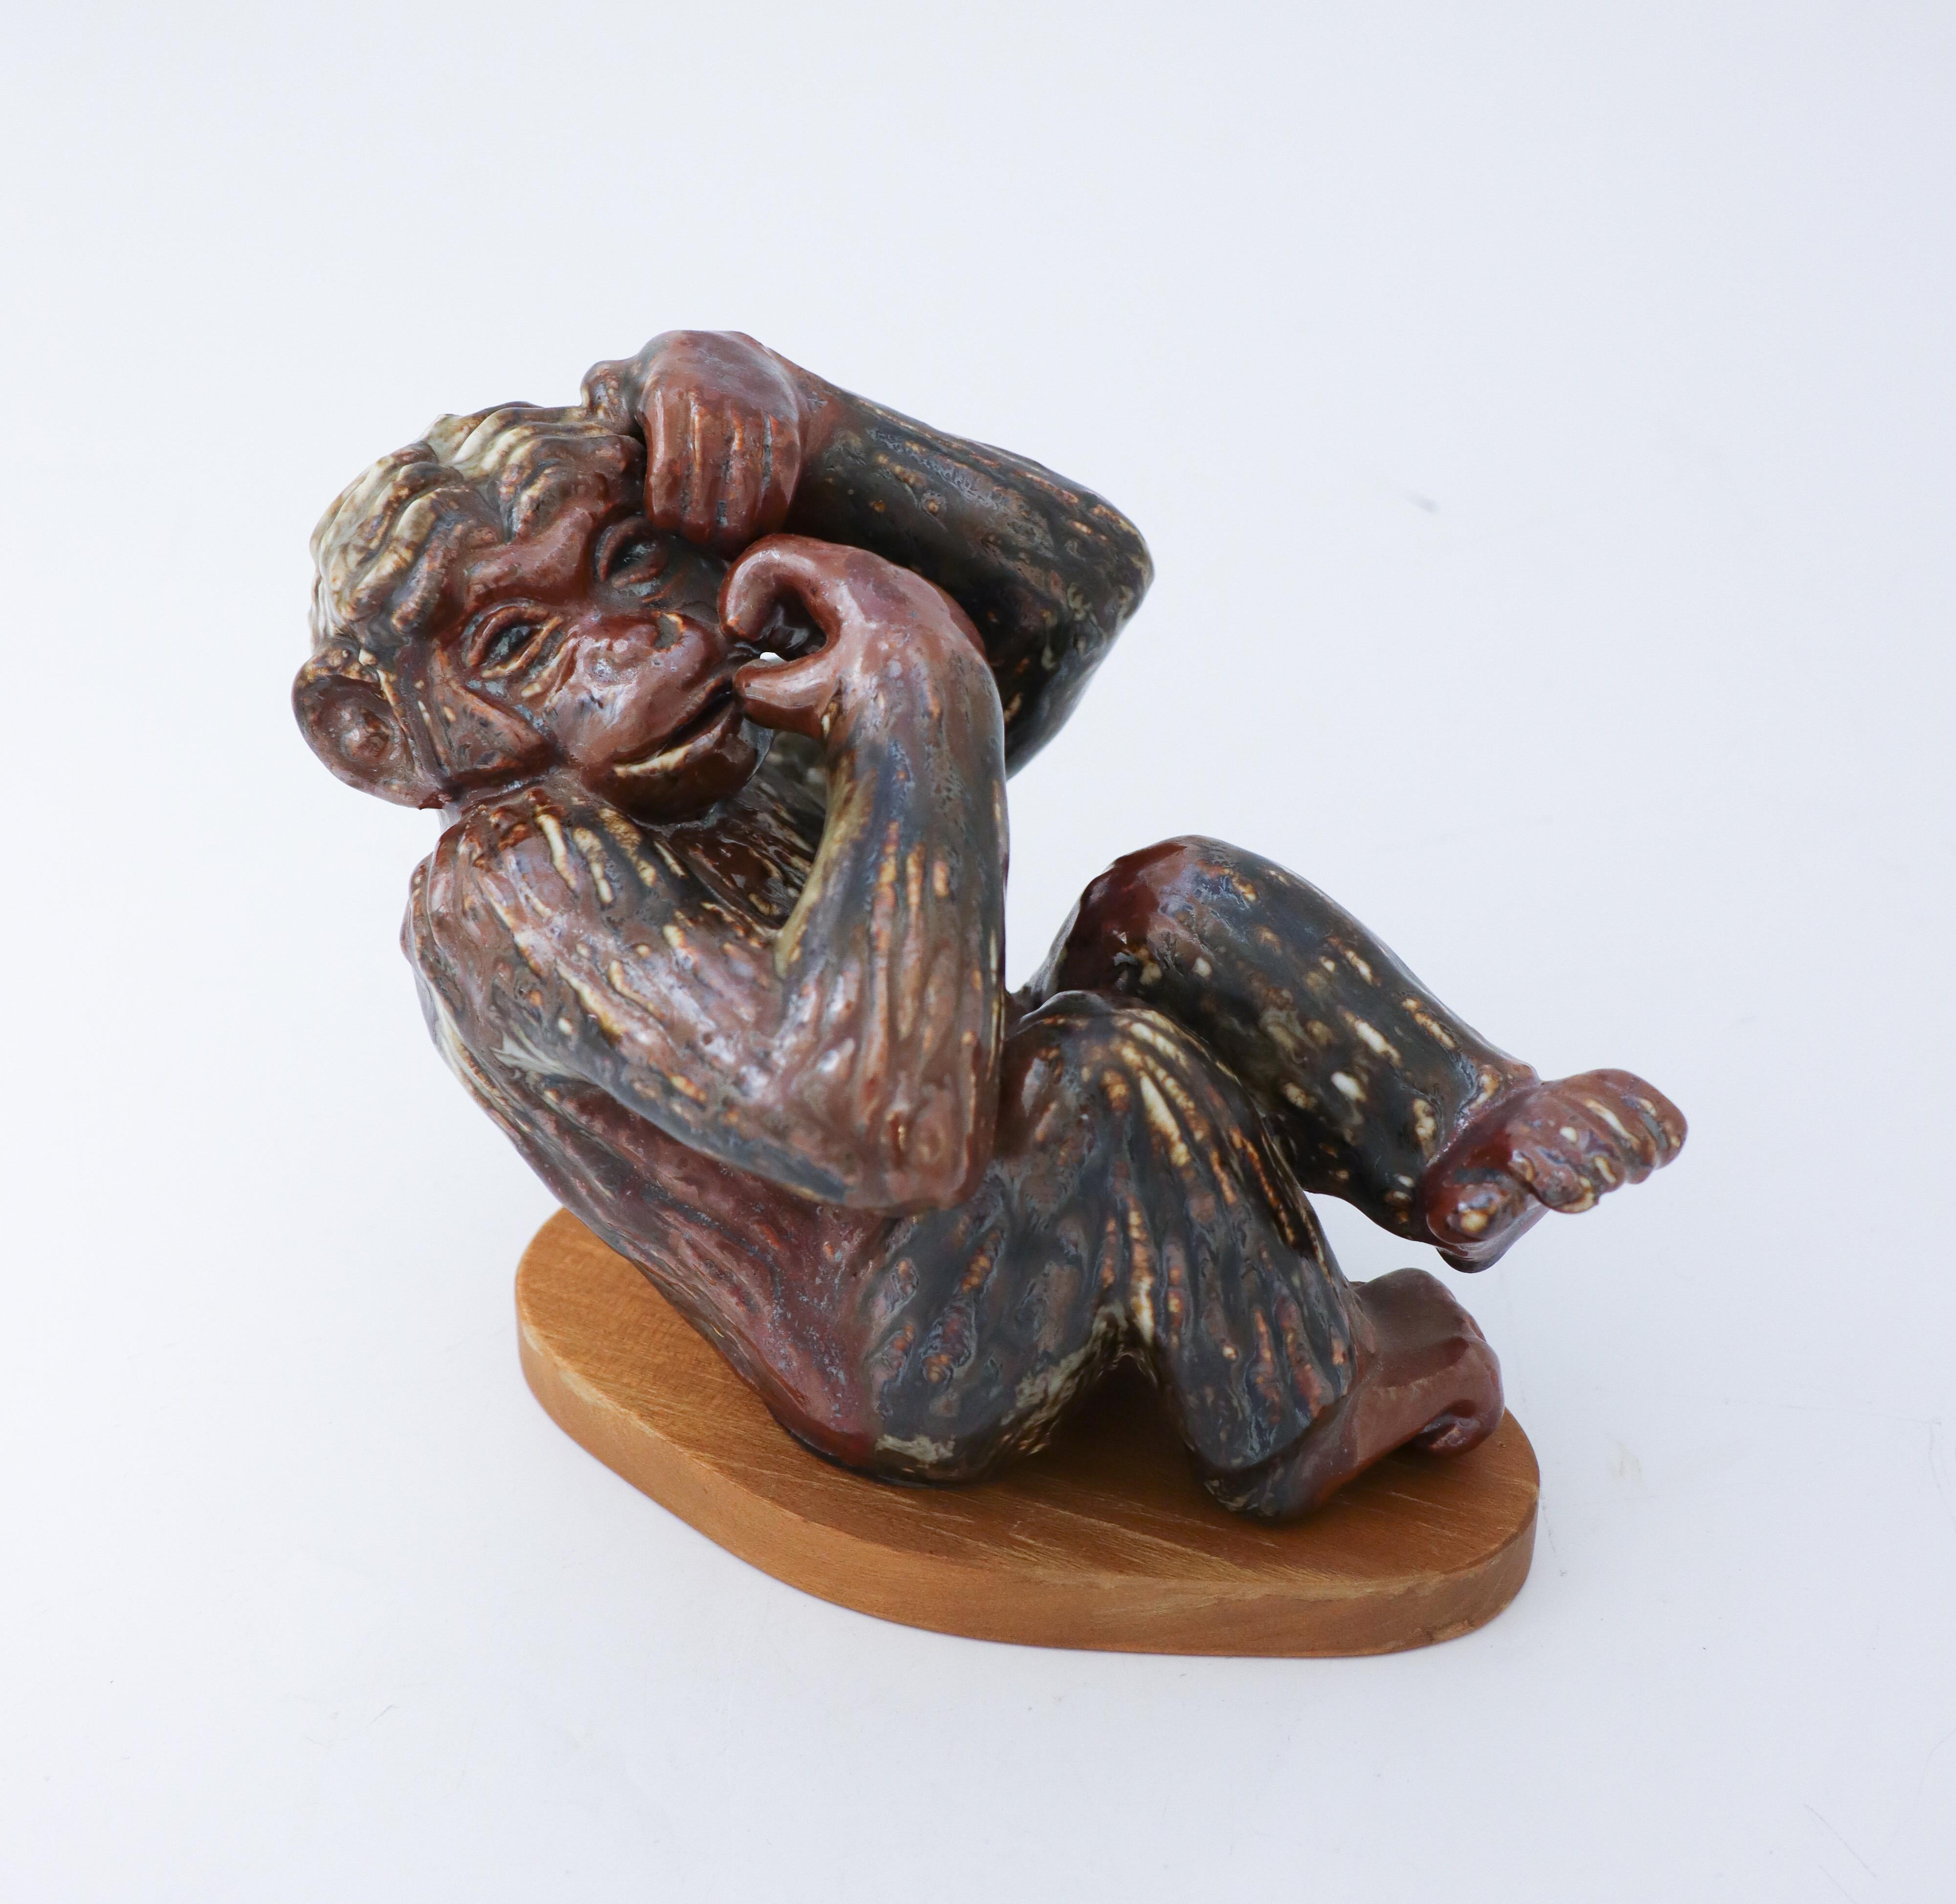 Une belle sculpture animale d'un singe conçue par Gunnar Nylund à Rörstrand, elle mesure 16 cm de haut et est en très bon état avec une belle glaçure. Il est livré avec son socle en bois d'origine. La sculpture est marquée comme étant de 1ère